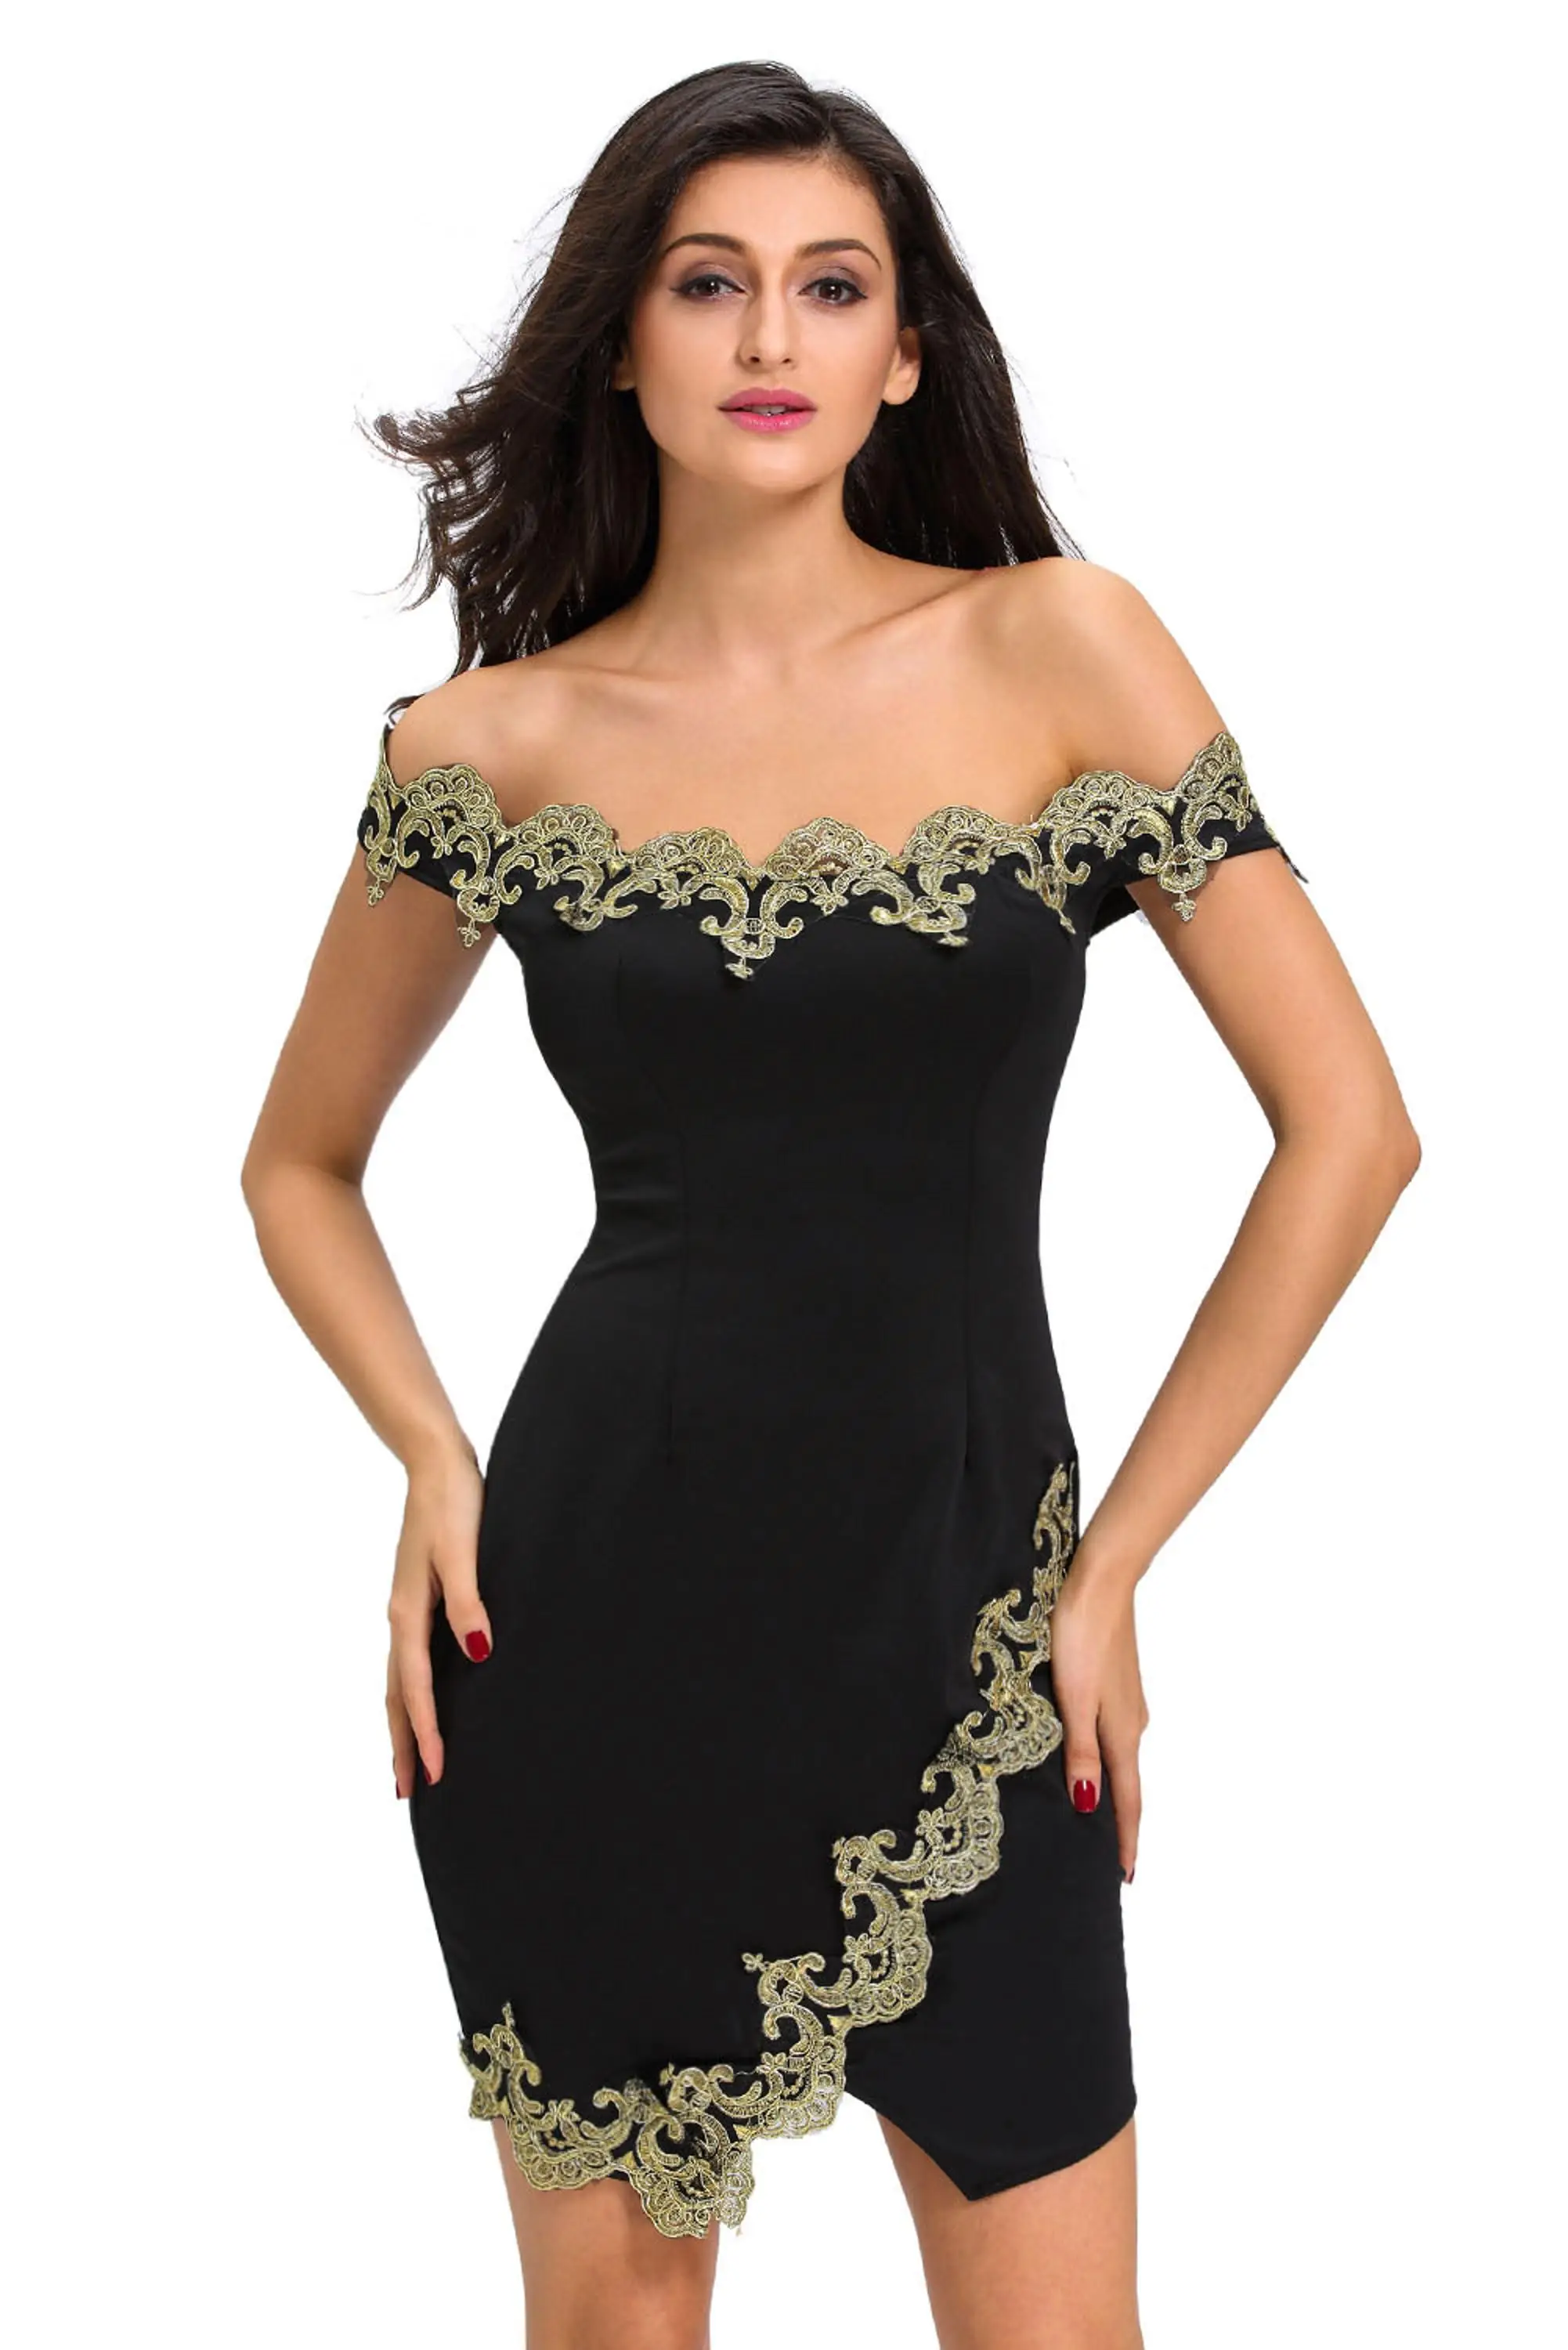 Hot Wholesale Gold Lace Applique Black Off Shoulder Mature Women Sexy Mini Dress Buy Mature 